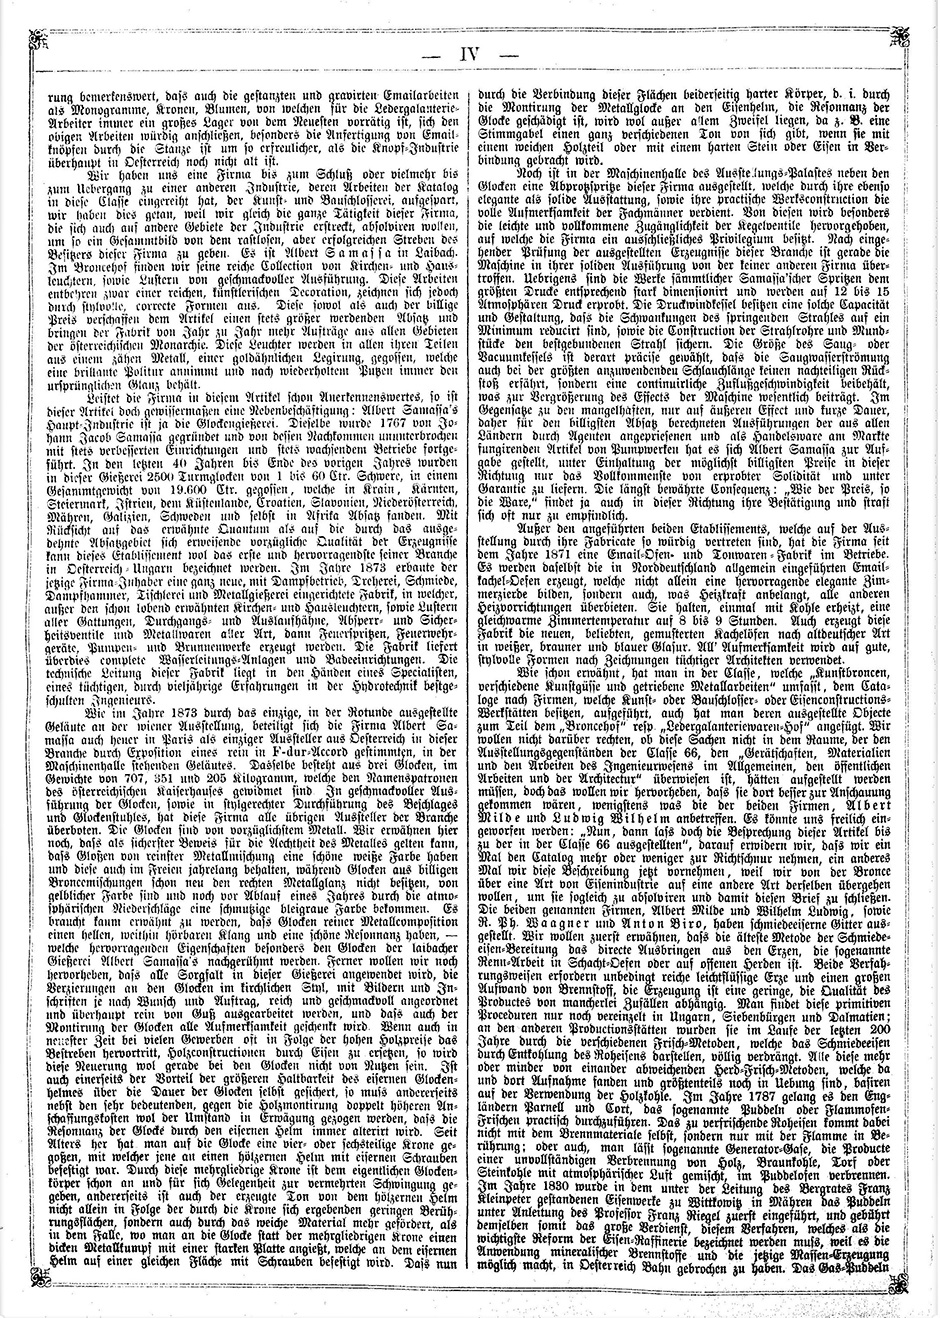 Archivbild 4: Beilage zur: "Österreichischen Gartenlaube" vom 19.9.1878